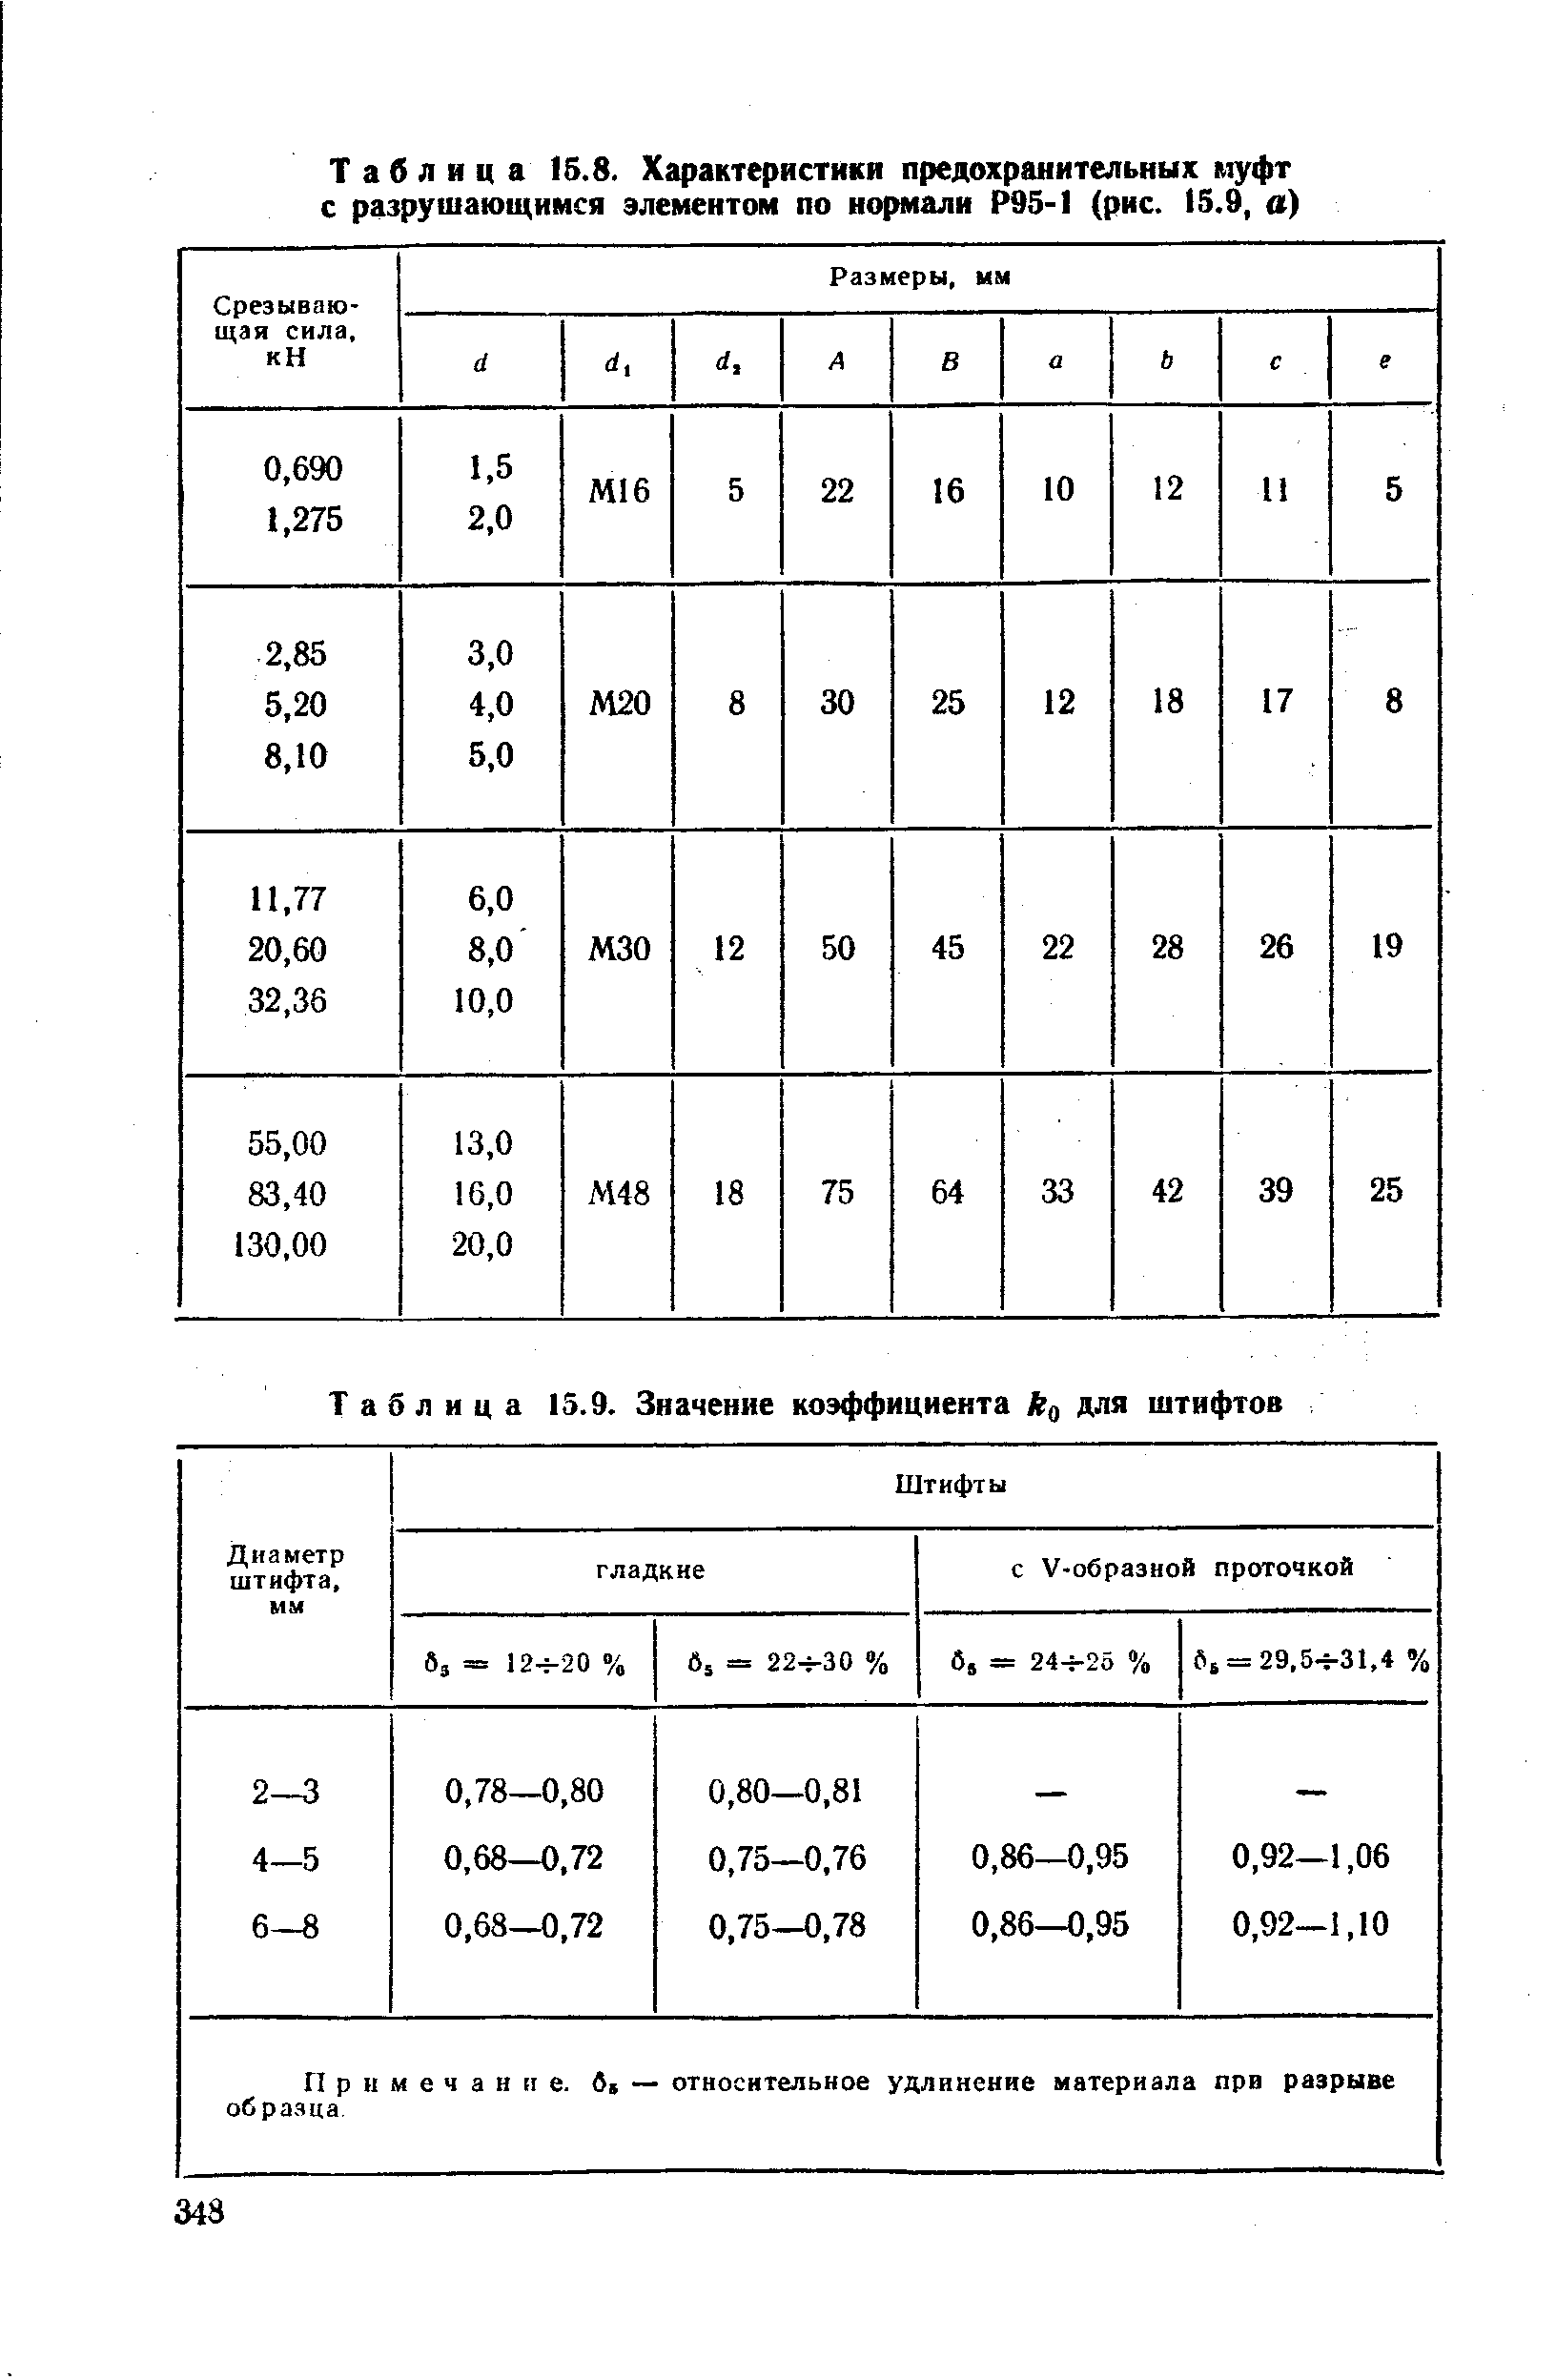 Таблица 15.8. Характеристики <a href="/info/2330">предохранительных муфт</a> с разрушающимся элементом по нормали Р95-1 (рис. 15.9, а)
